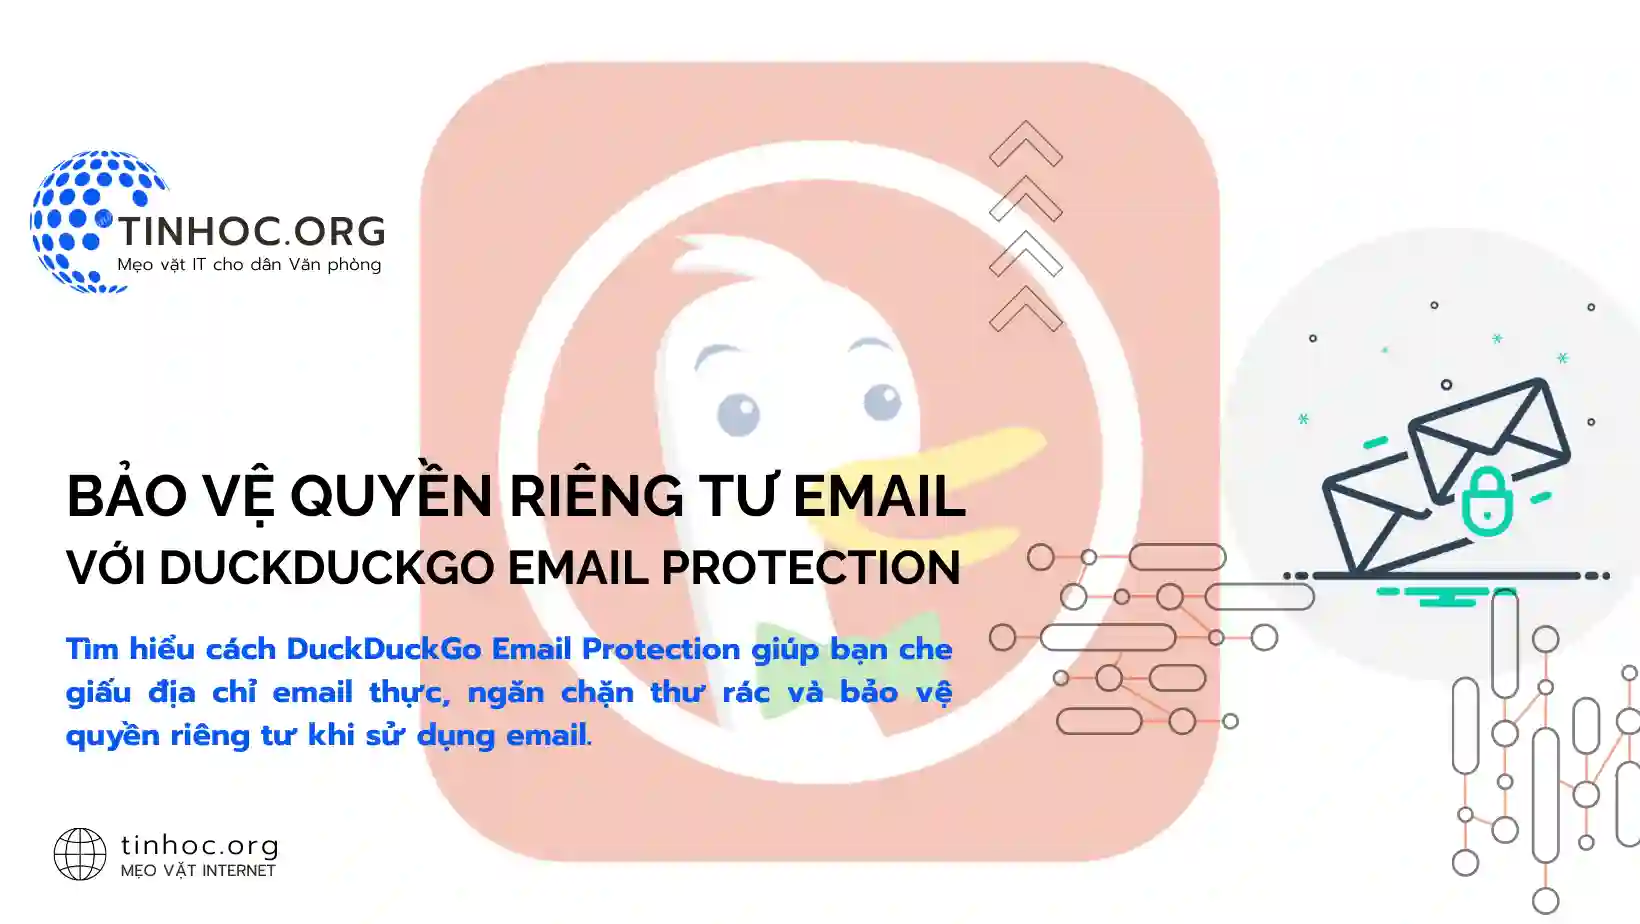 Tìm hiểu cách DuckDuckGo Email Protection giúp bạn che giấu địa chỉ email thực, ngăn chặn thư rác và bảo vệ quyền riêng tư khi sử dụng email.